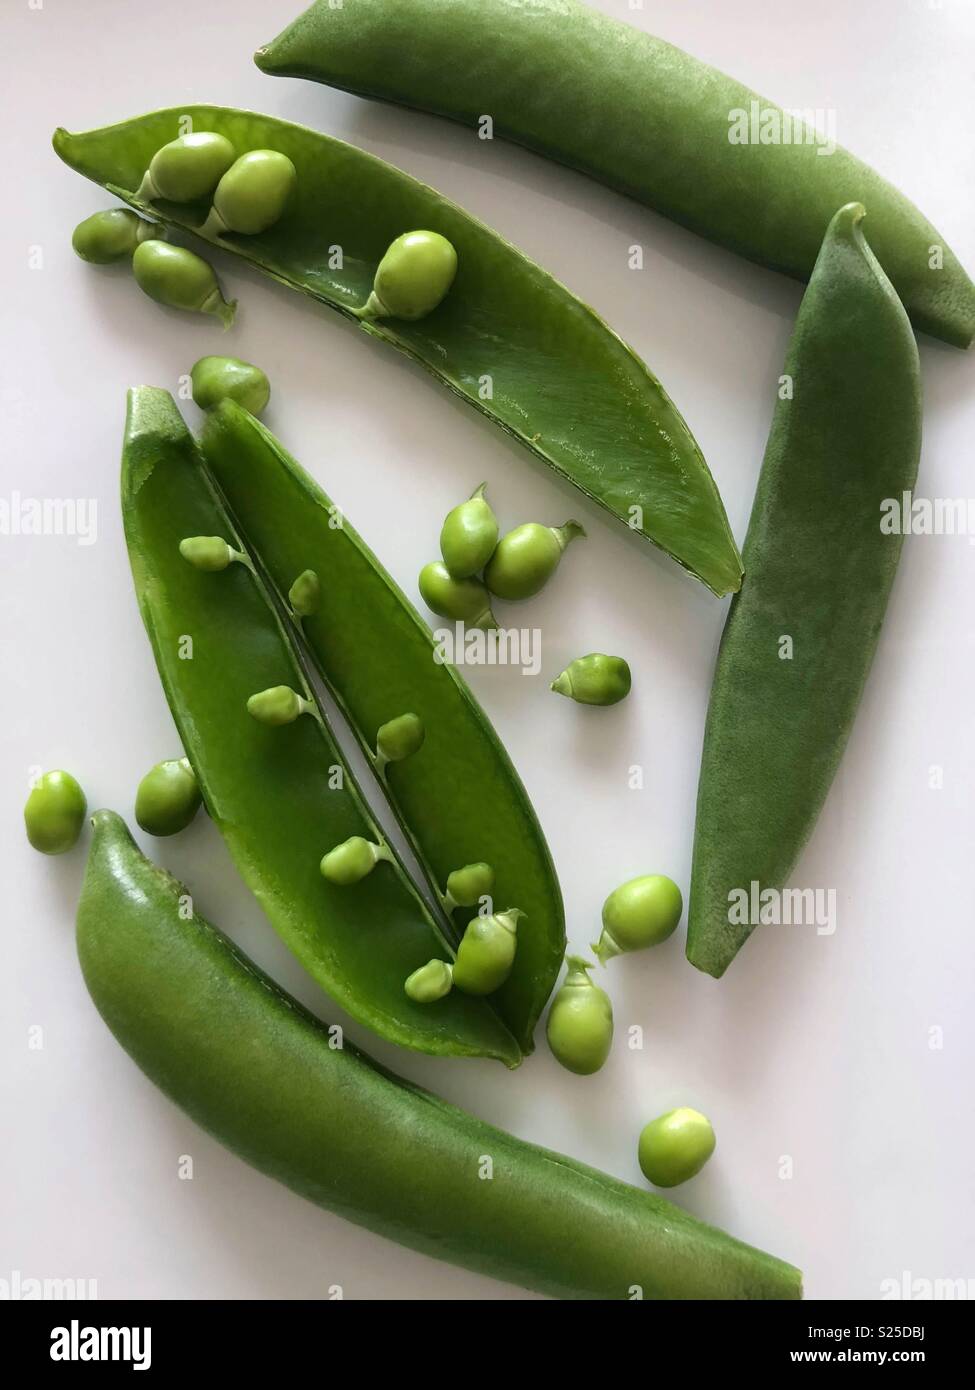 Snow peas Stock Photo